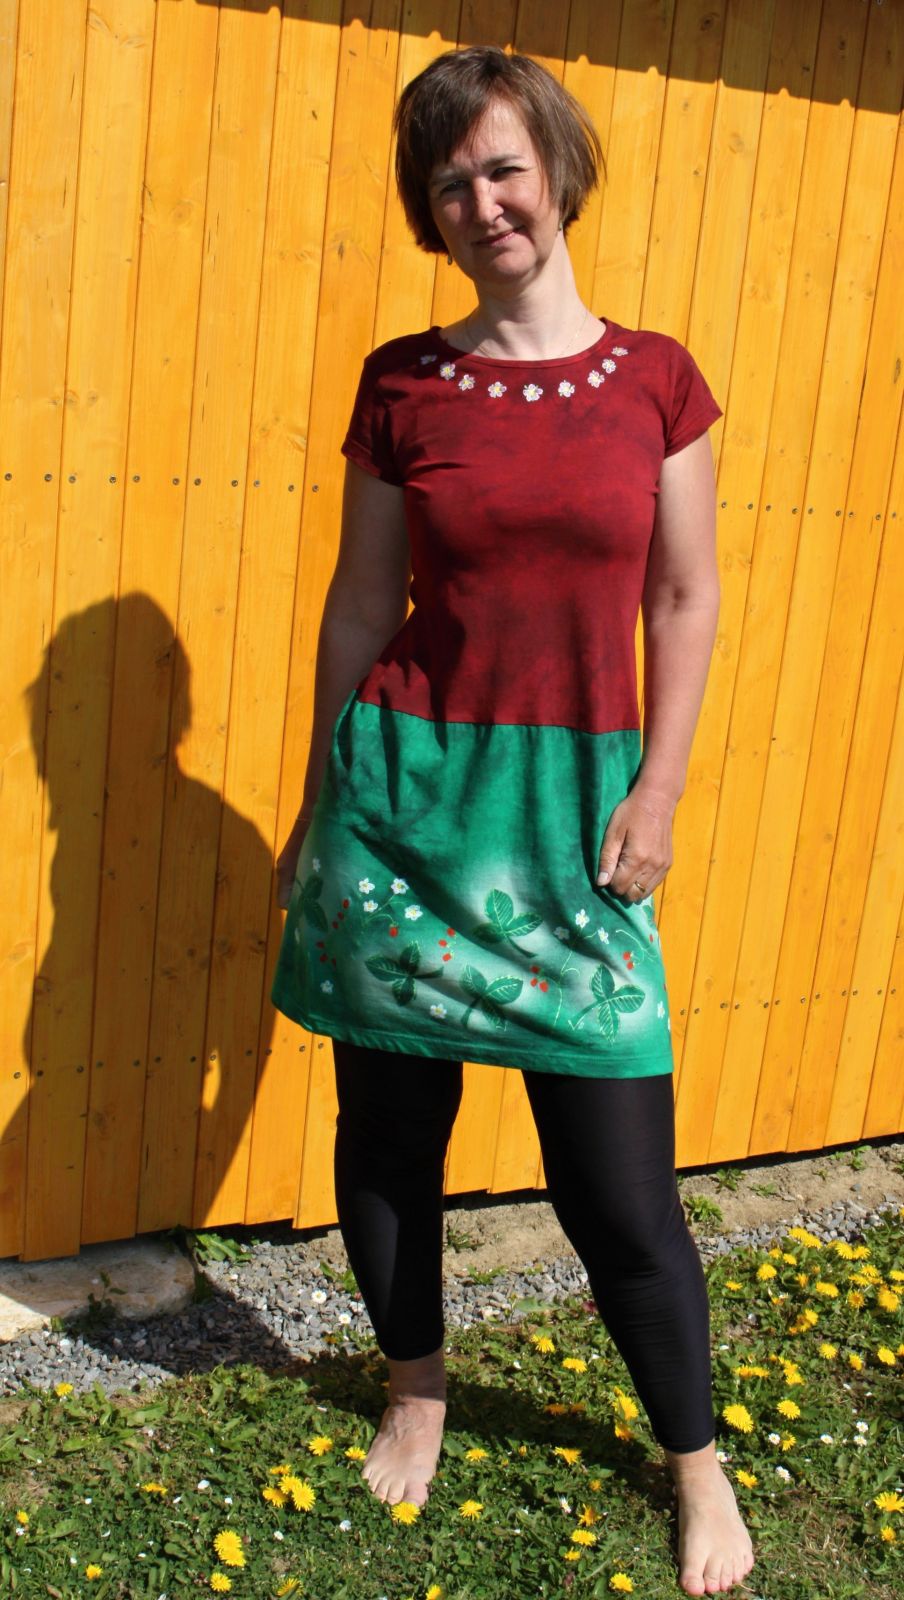 Malované batikované šaty - Jarní nádech Batitex - malovaná trička, mikiny, šátky, šály, šaty